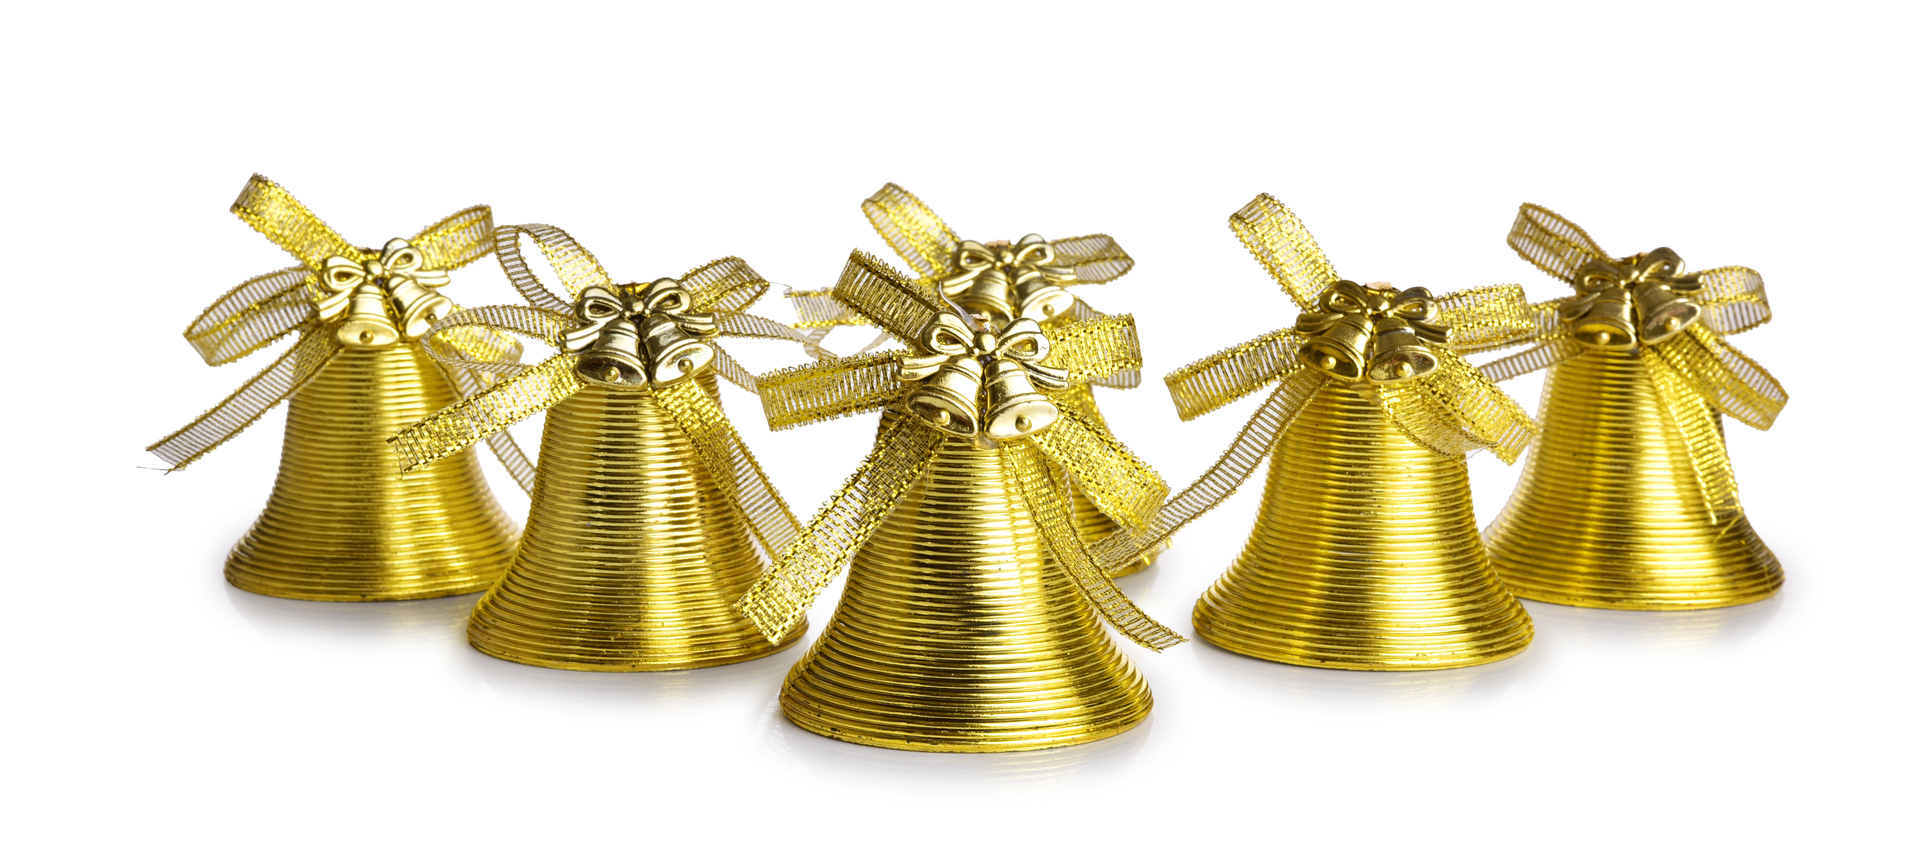 6 ks zlatých zvonečků s přízdobou